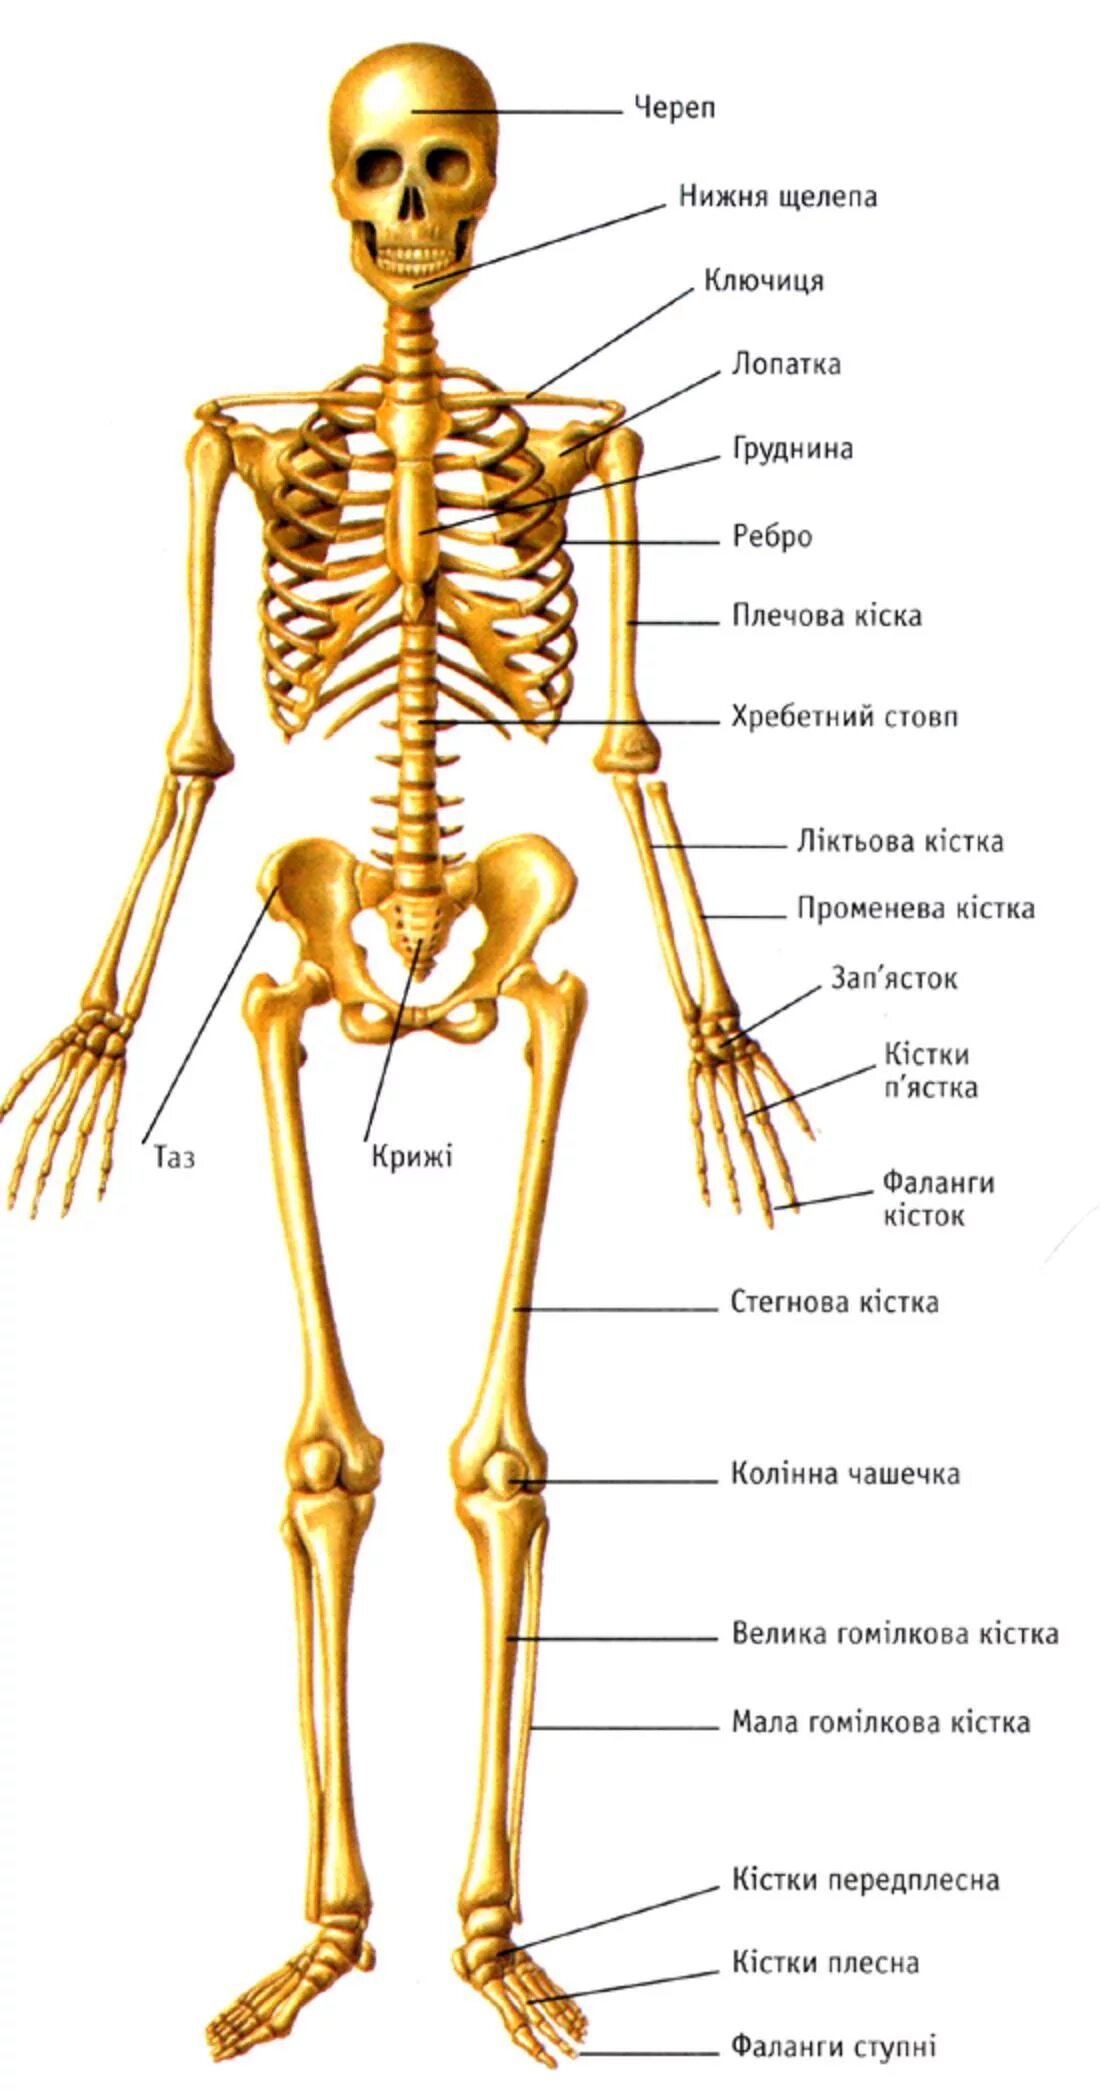 Кости скелета человека название. Строение человеческих костей. Костный скелет человека анатомия. Скелет человека анатомия кости с названием костей.